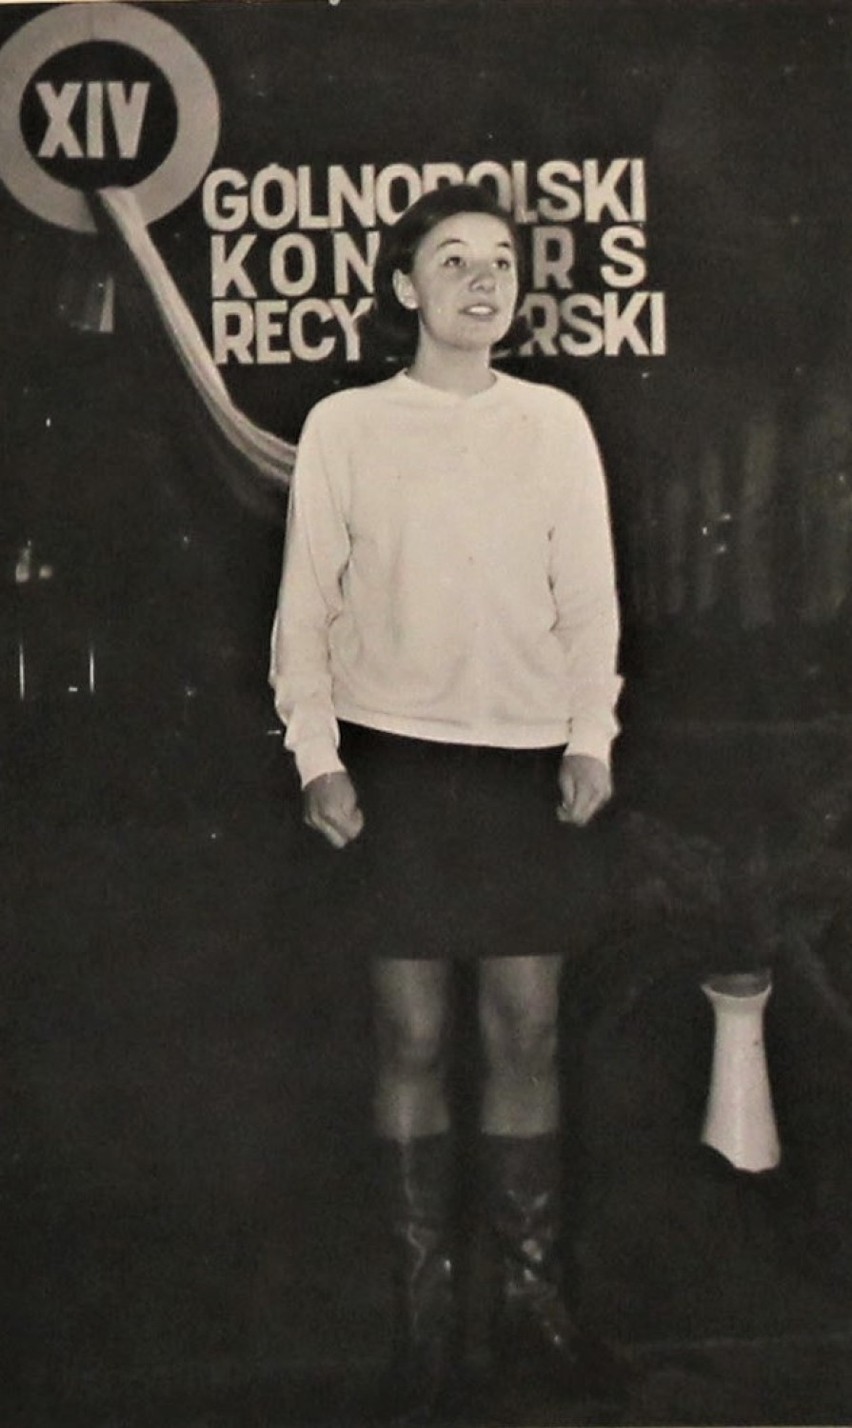 Eliminacje konkursu recytatorskiego, 1967 r.